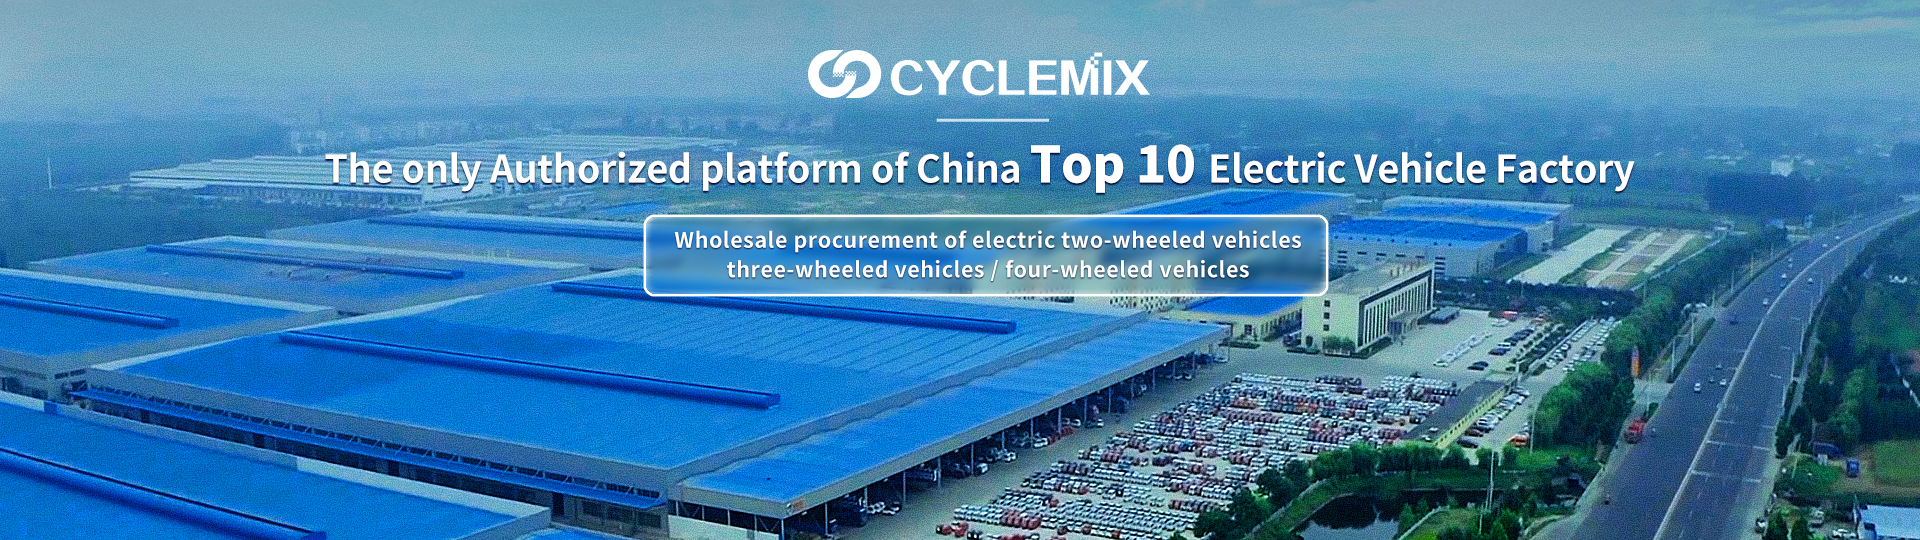 CYCLEMIX Қытайдың ең жақсы 10 электр көлігі зауытының жалғыз уәкілетті тарапы/платформасы